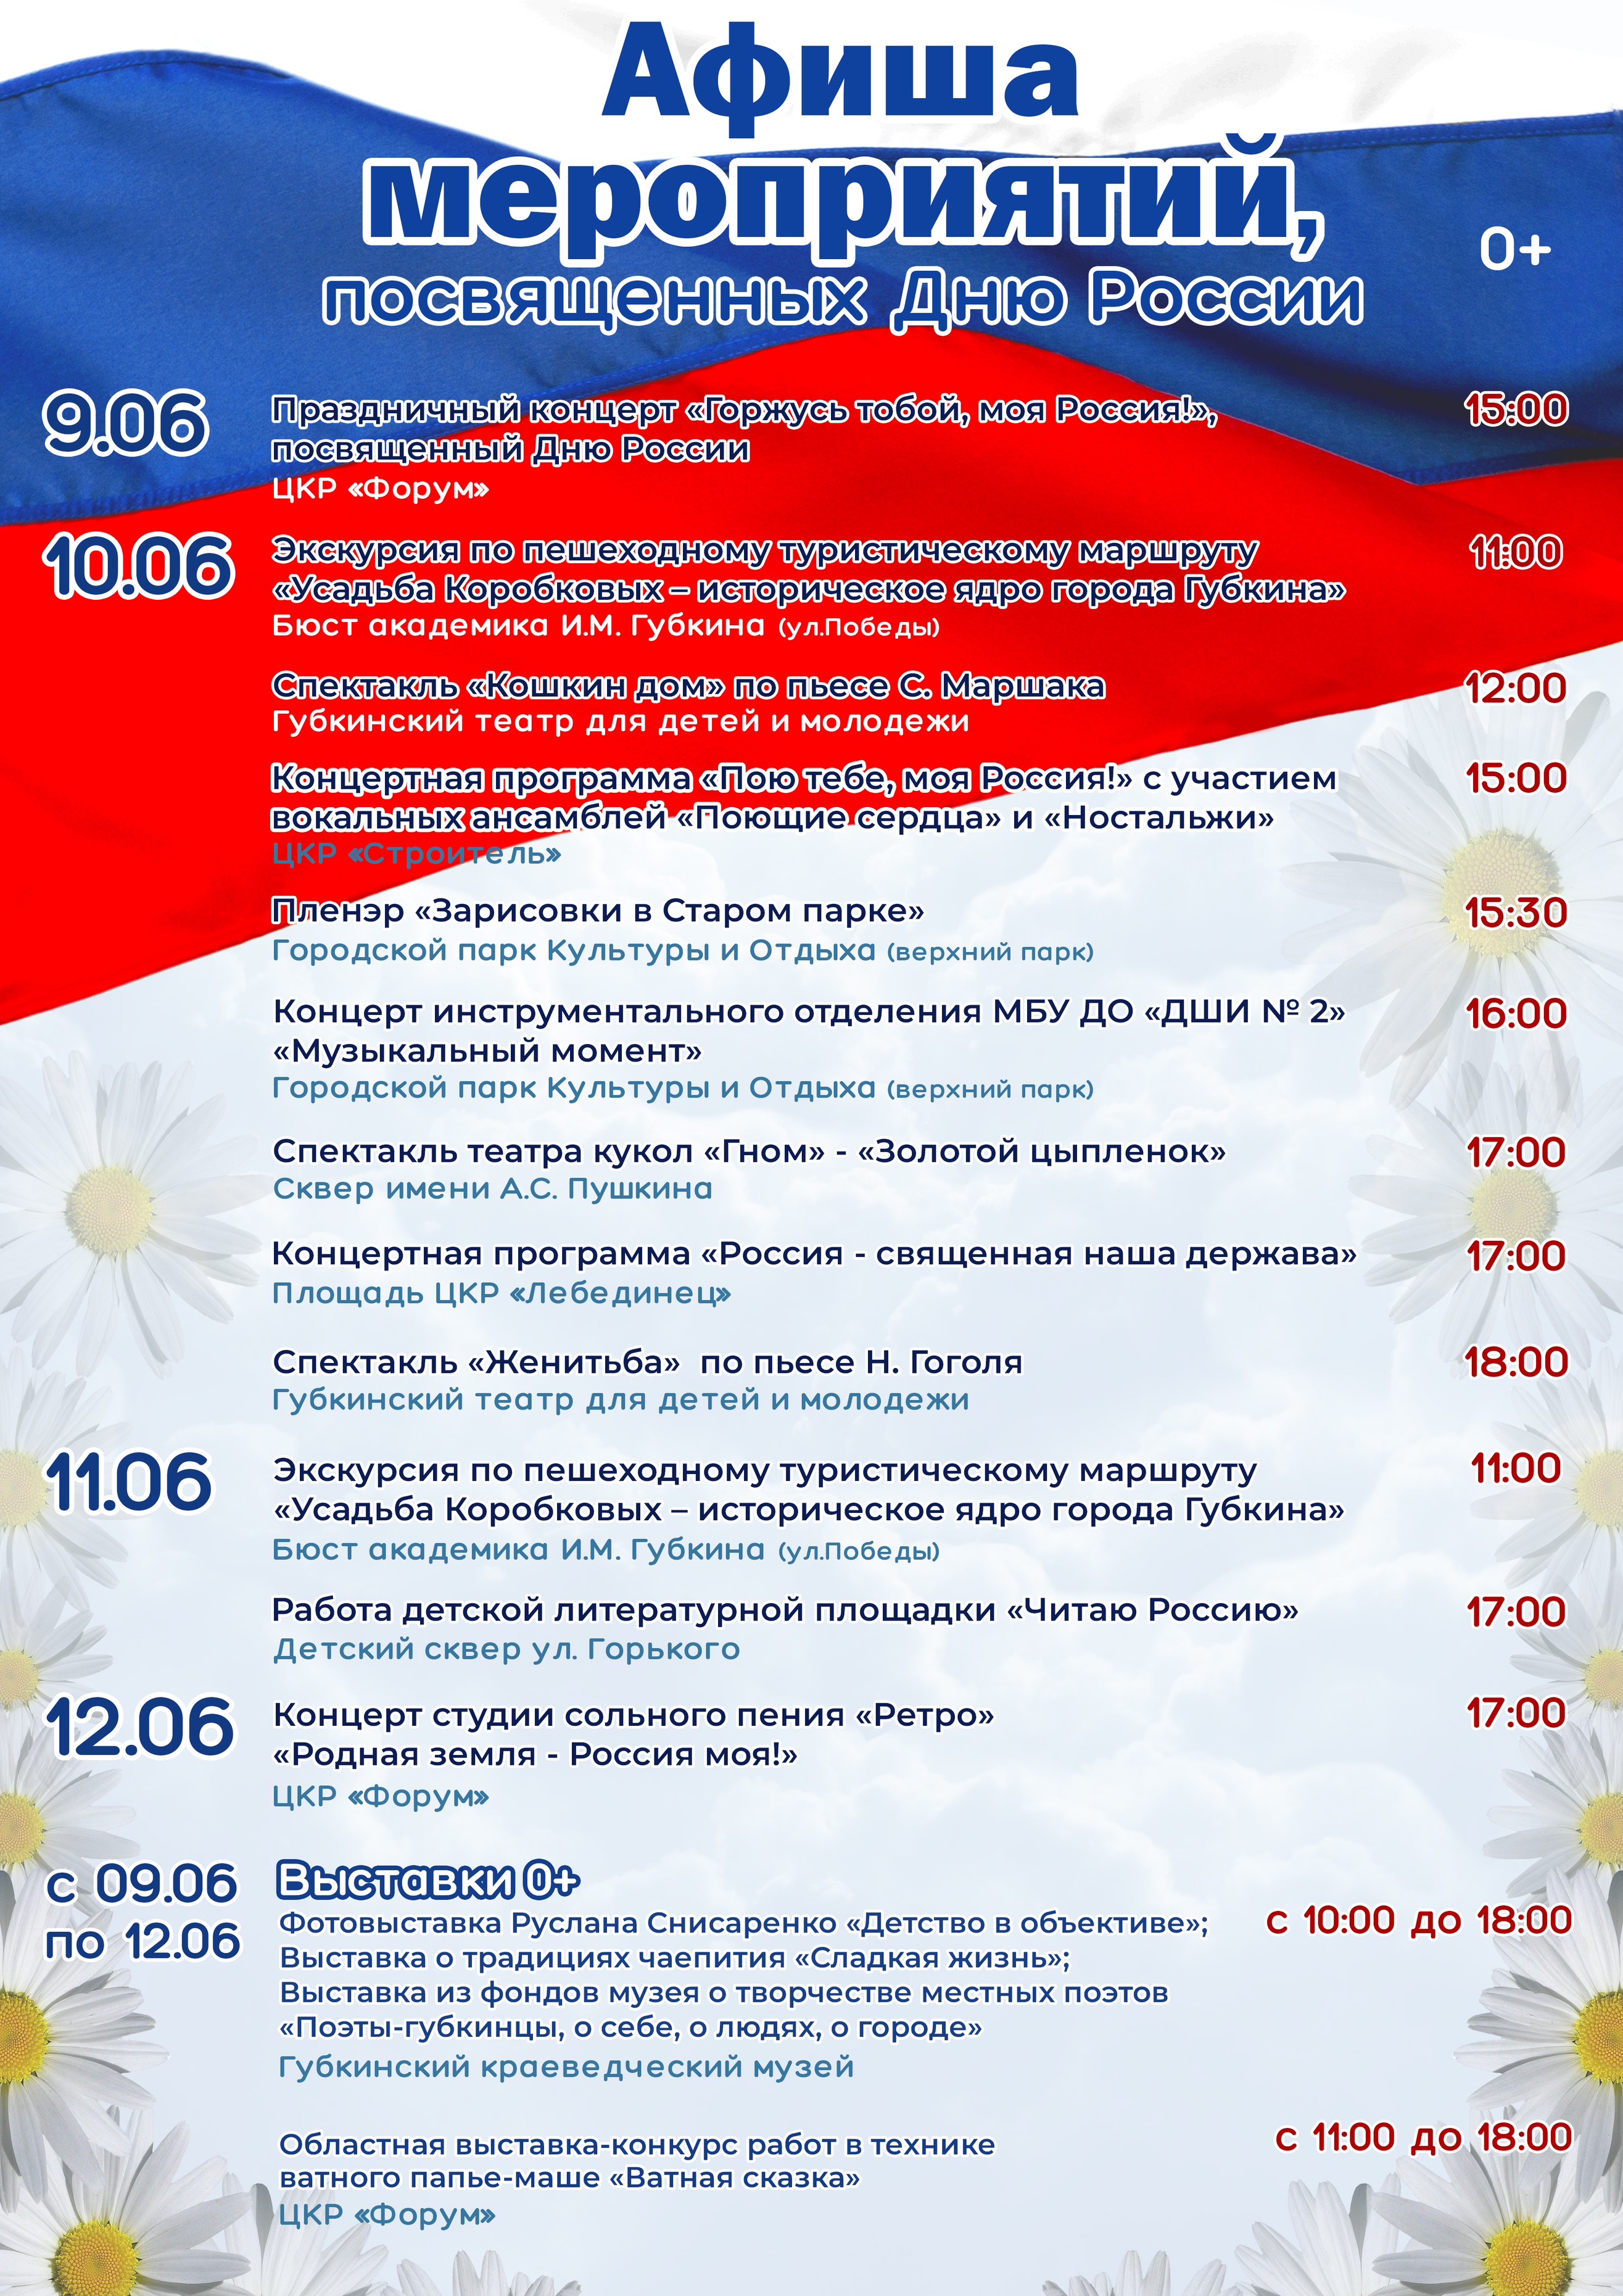 Афиша праздничных мероприятий, посвященных Дню России.